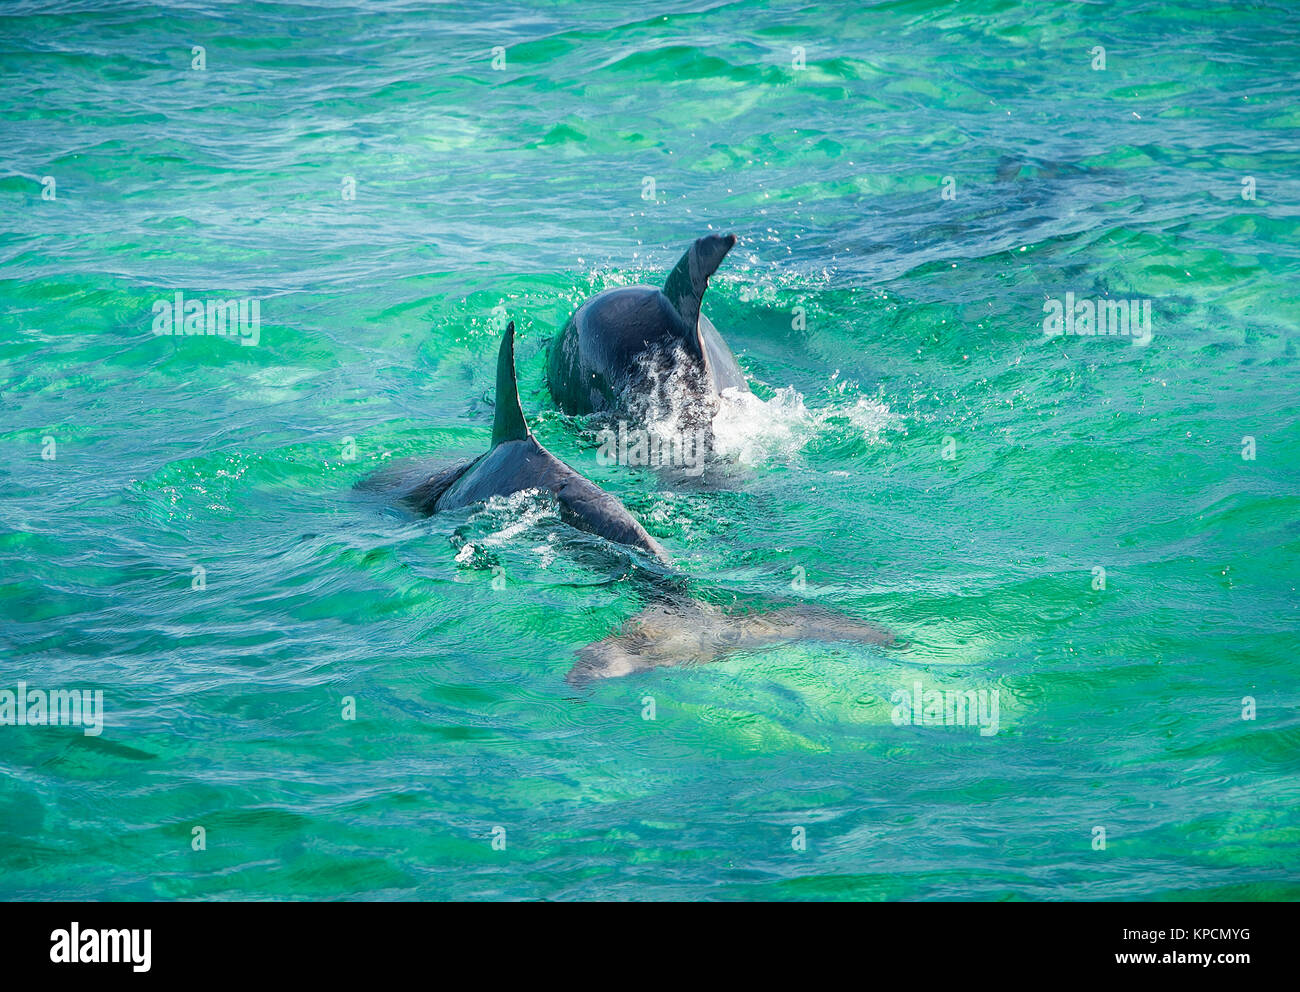 Le saut du dauphin dans l'eau turquoise près de l'île de San Pedro, Belize. Banque D'Images